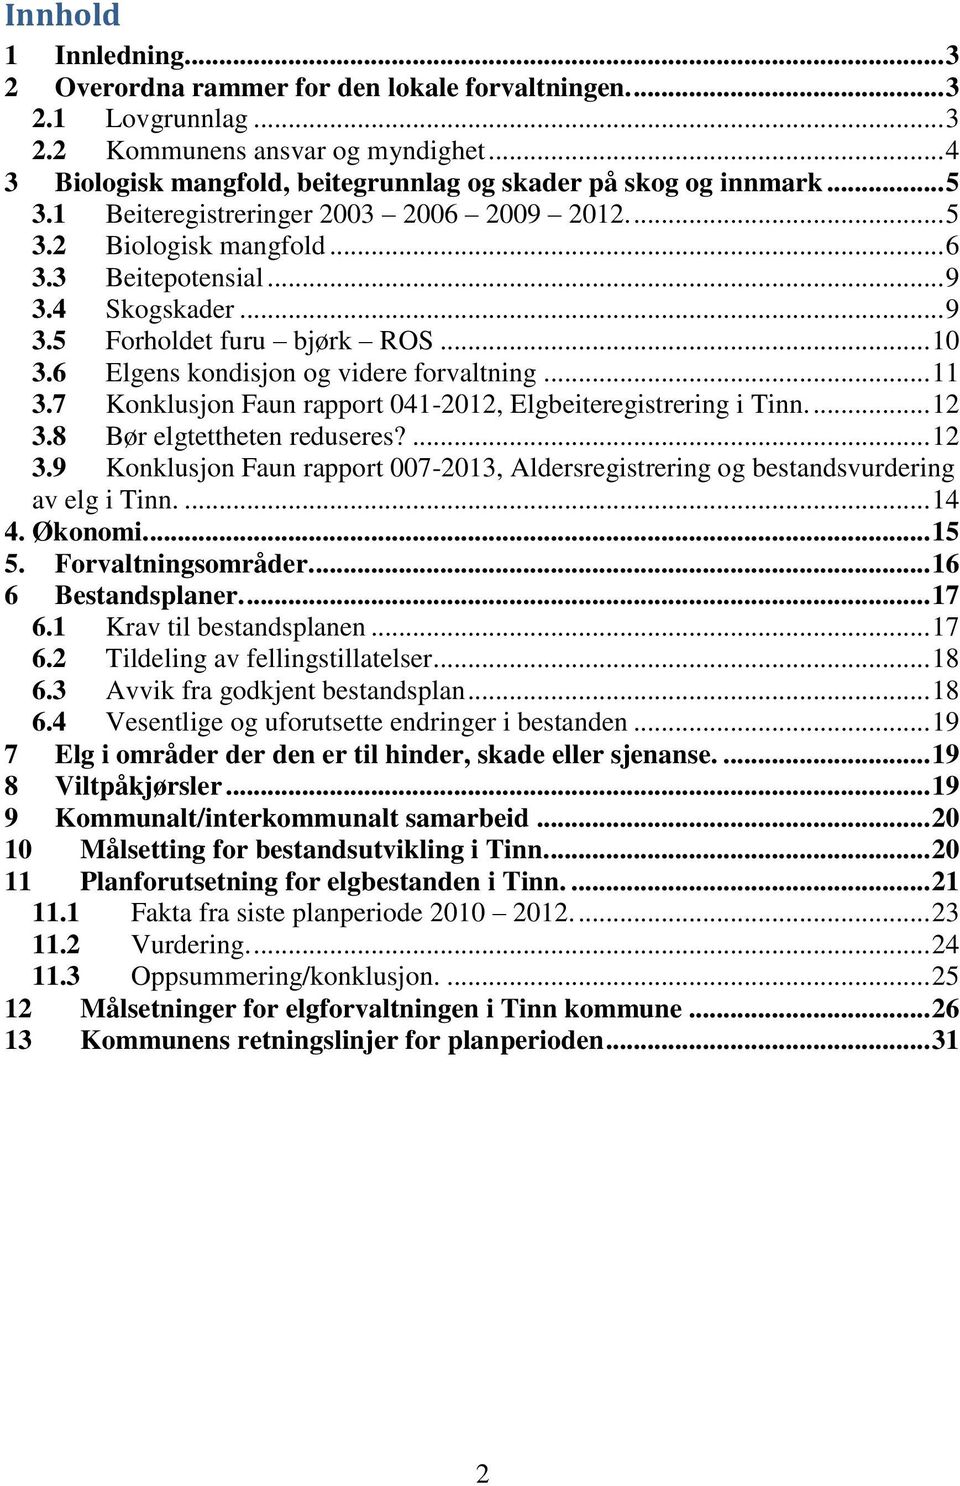 4 Skogskader... 9 3.5 Forholdet furu bjørk ROS... 10 3.6 Elgens kondisjon og videre forvaltning... 11 3.7 Konklusjon Faun rapport 041-2012, Elgbeiteregistrering i Tinn.... 12 3.